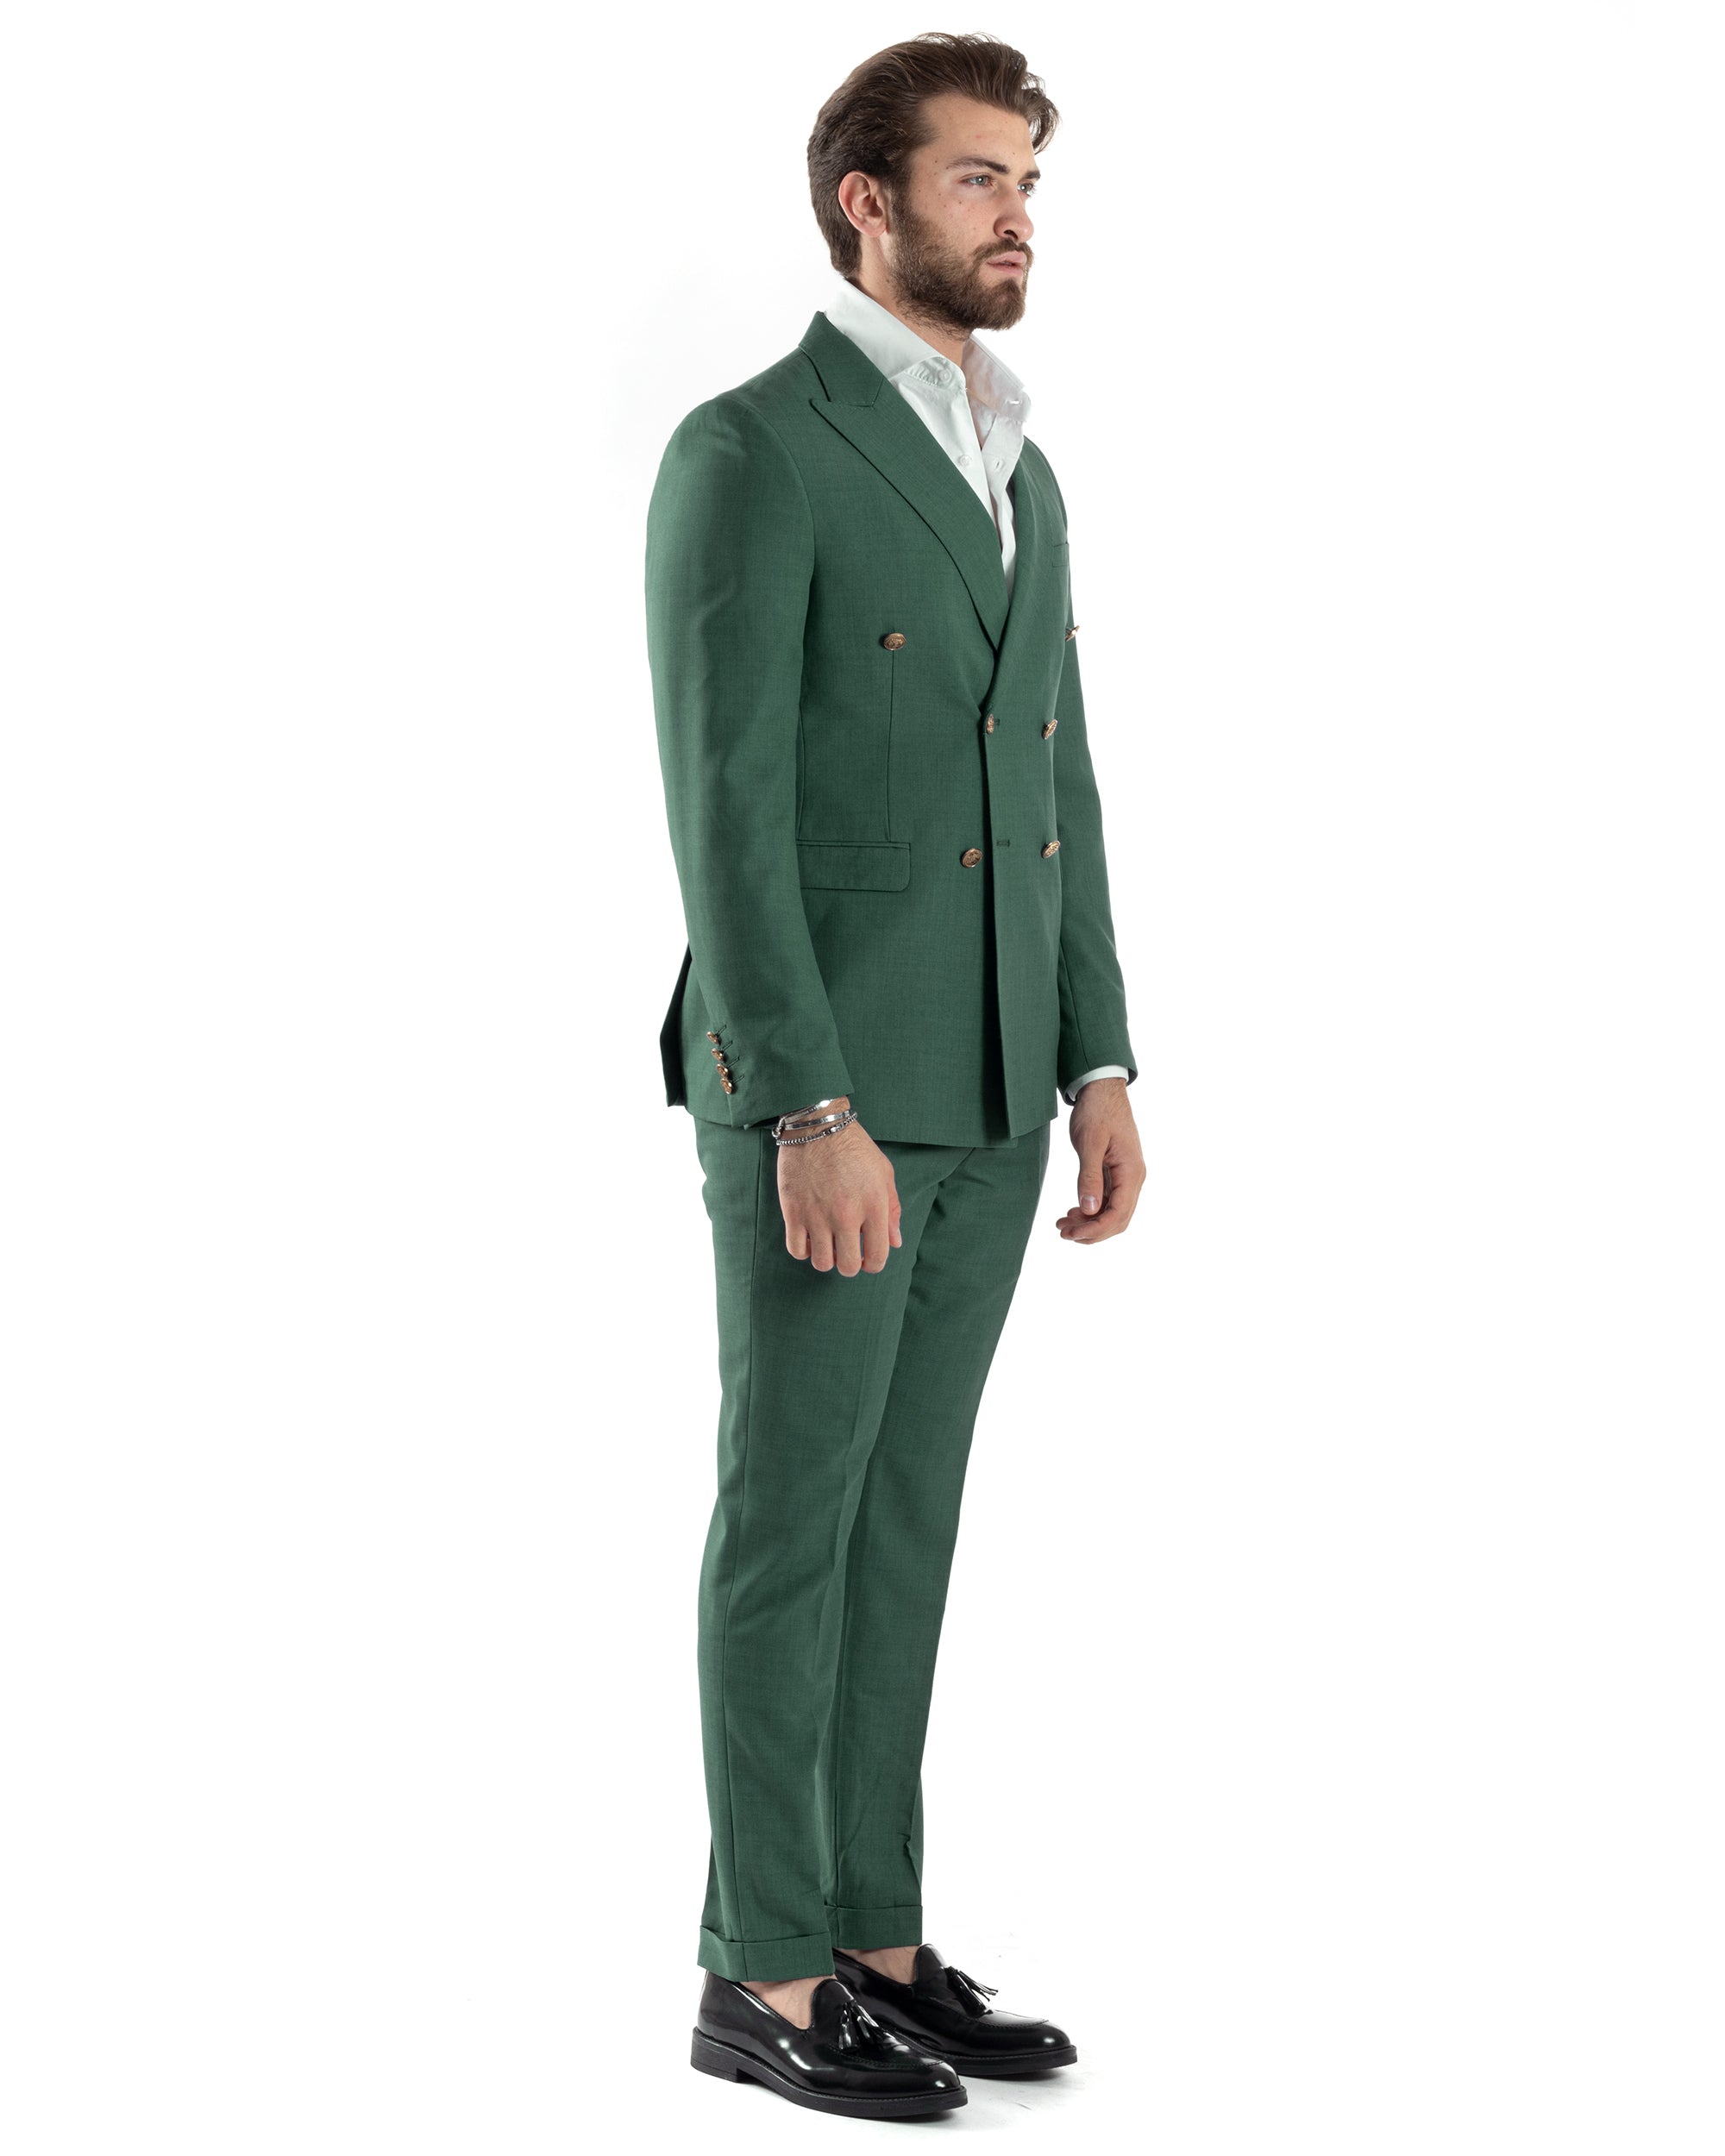 Abito Uomo Doppiopetto Vestito Completo Giacca Pantaloni Bottoni Metallo Verde Melangiato Elegante Casual GIOSAL-AE1057A